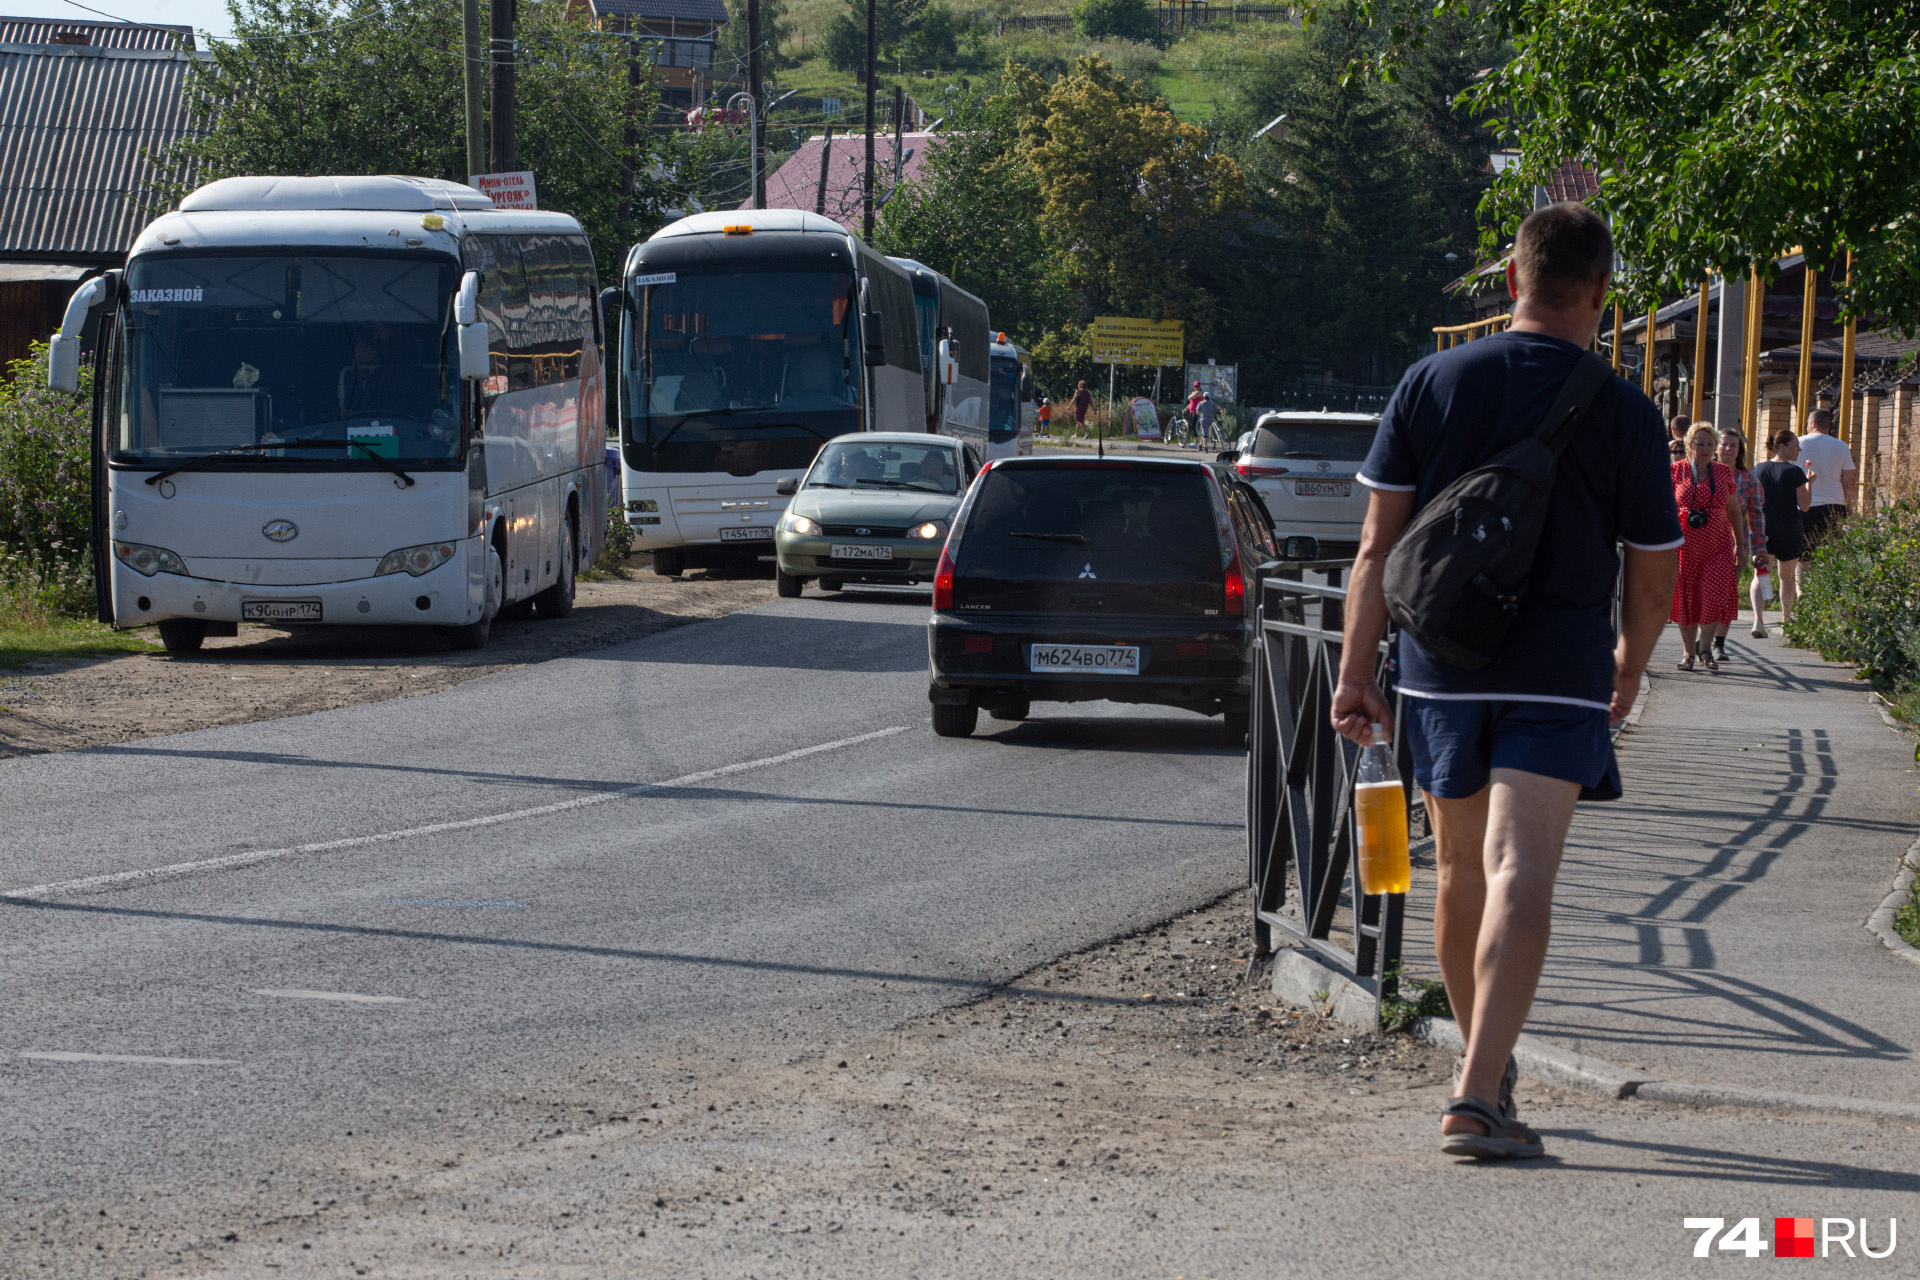 Подавляющее большинство автобусов едут из Челябинской и Свердловской областей